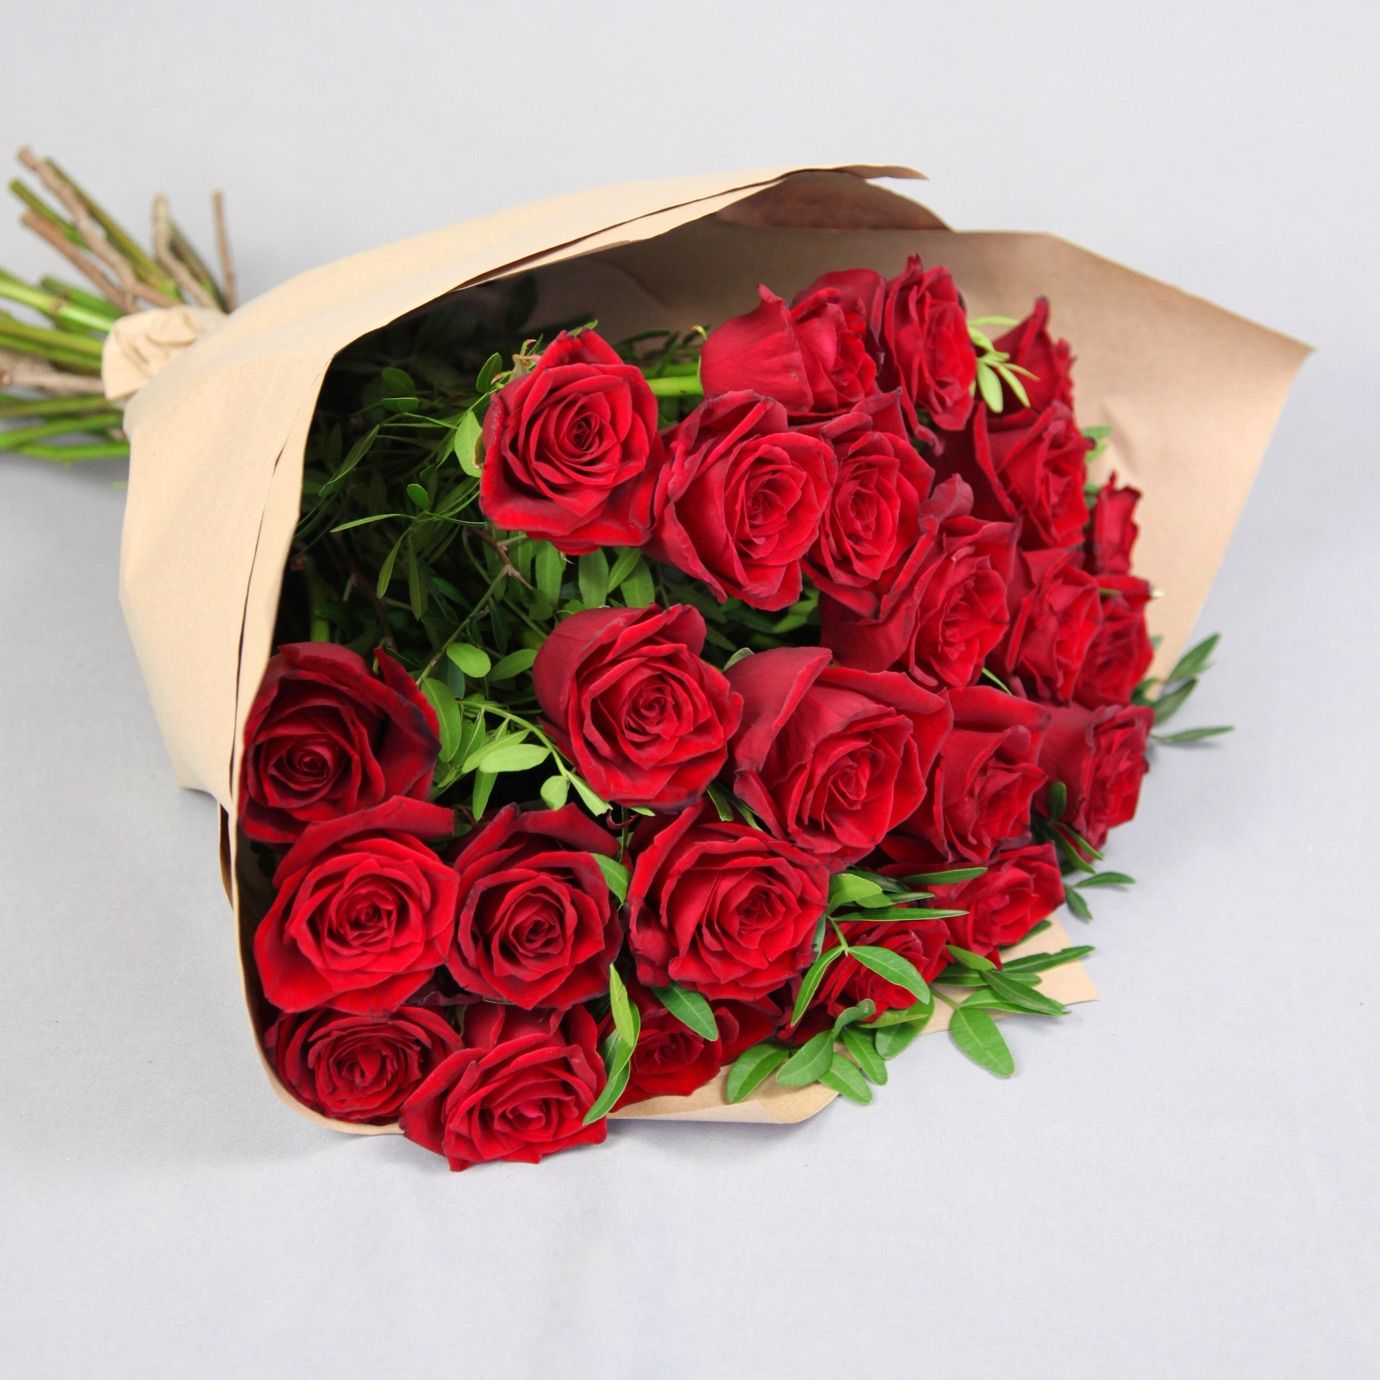 تصویر دسته گل رز قرمز با کاغذ کاهی لاکچری برای هدیه